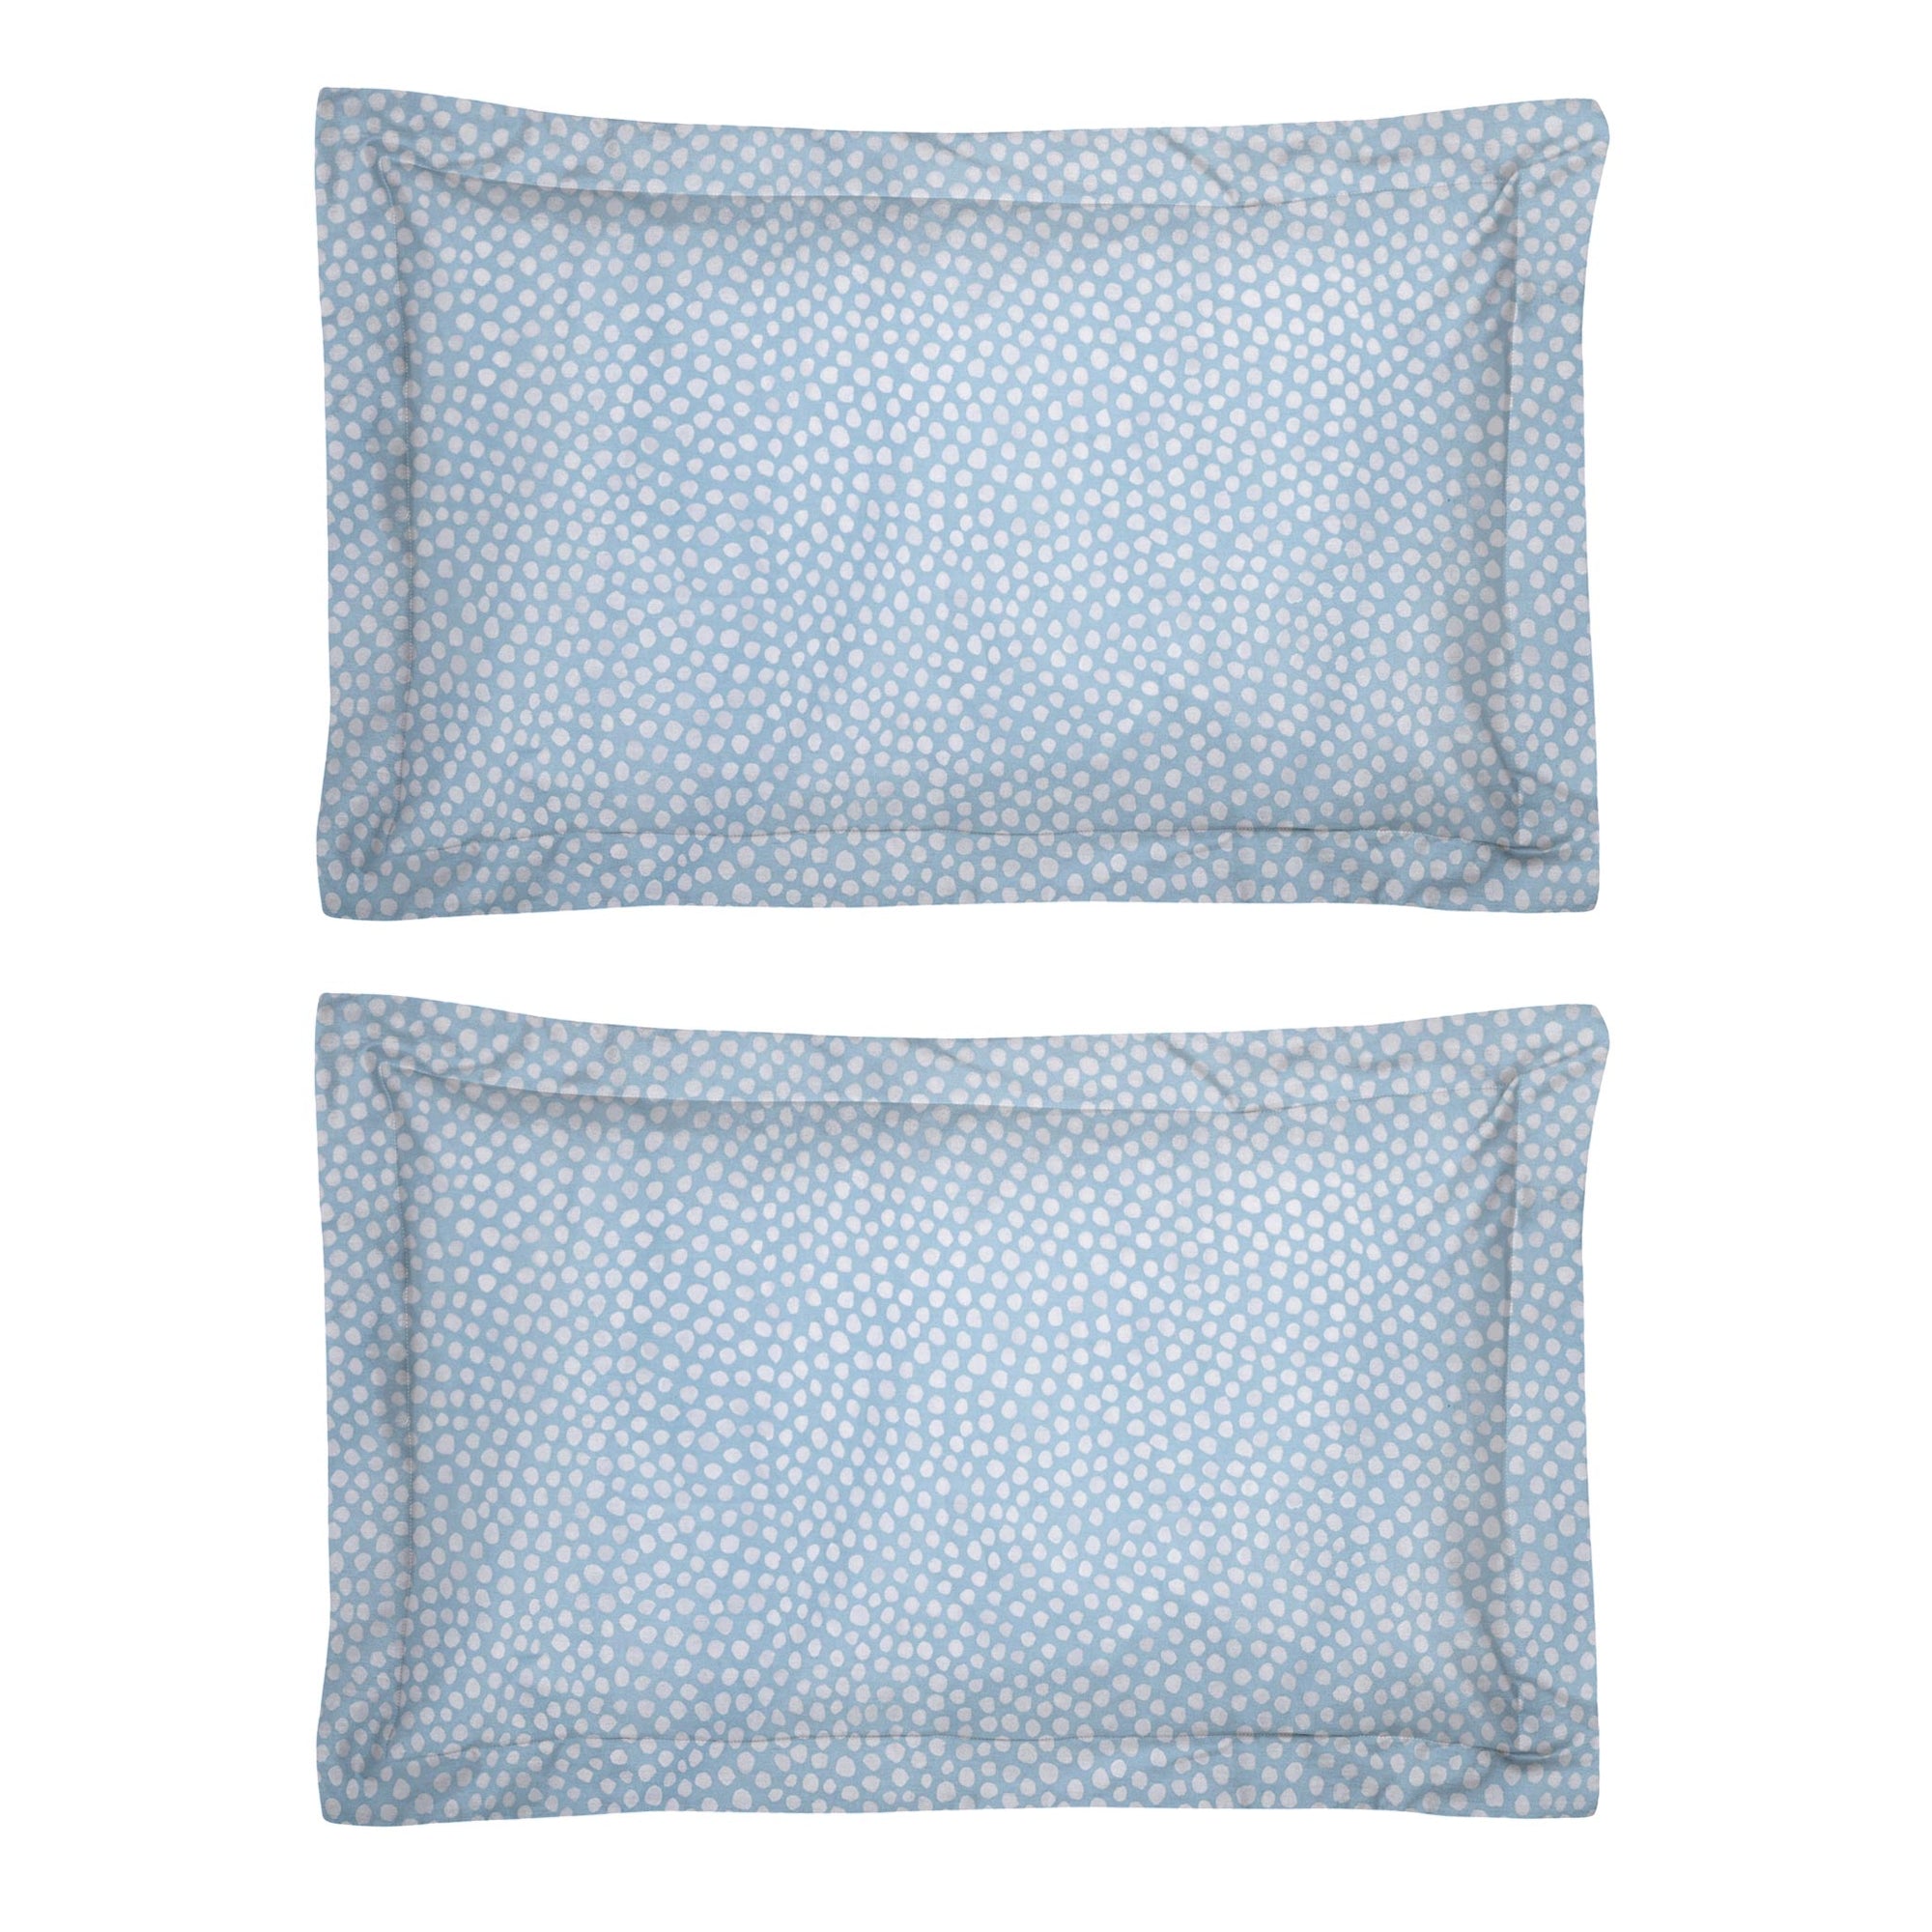 One Pair Aqua Blue Polka Dot 100% Cotton Percale 200TC Oxford Pillowcase